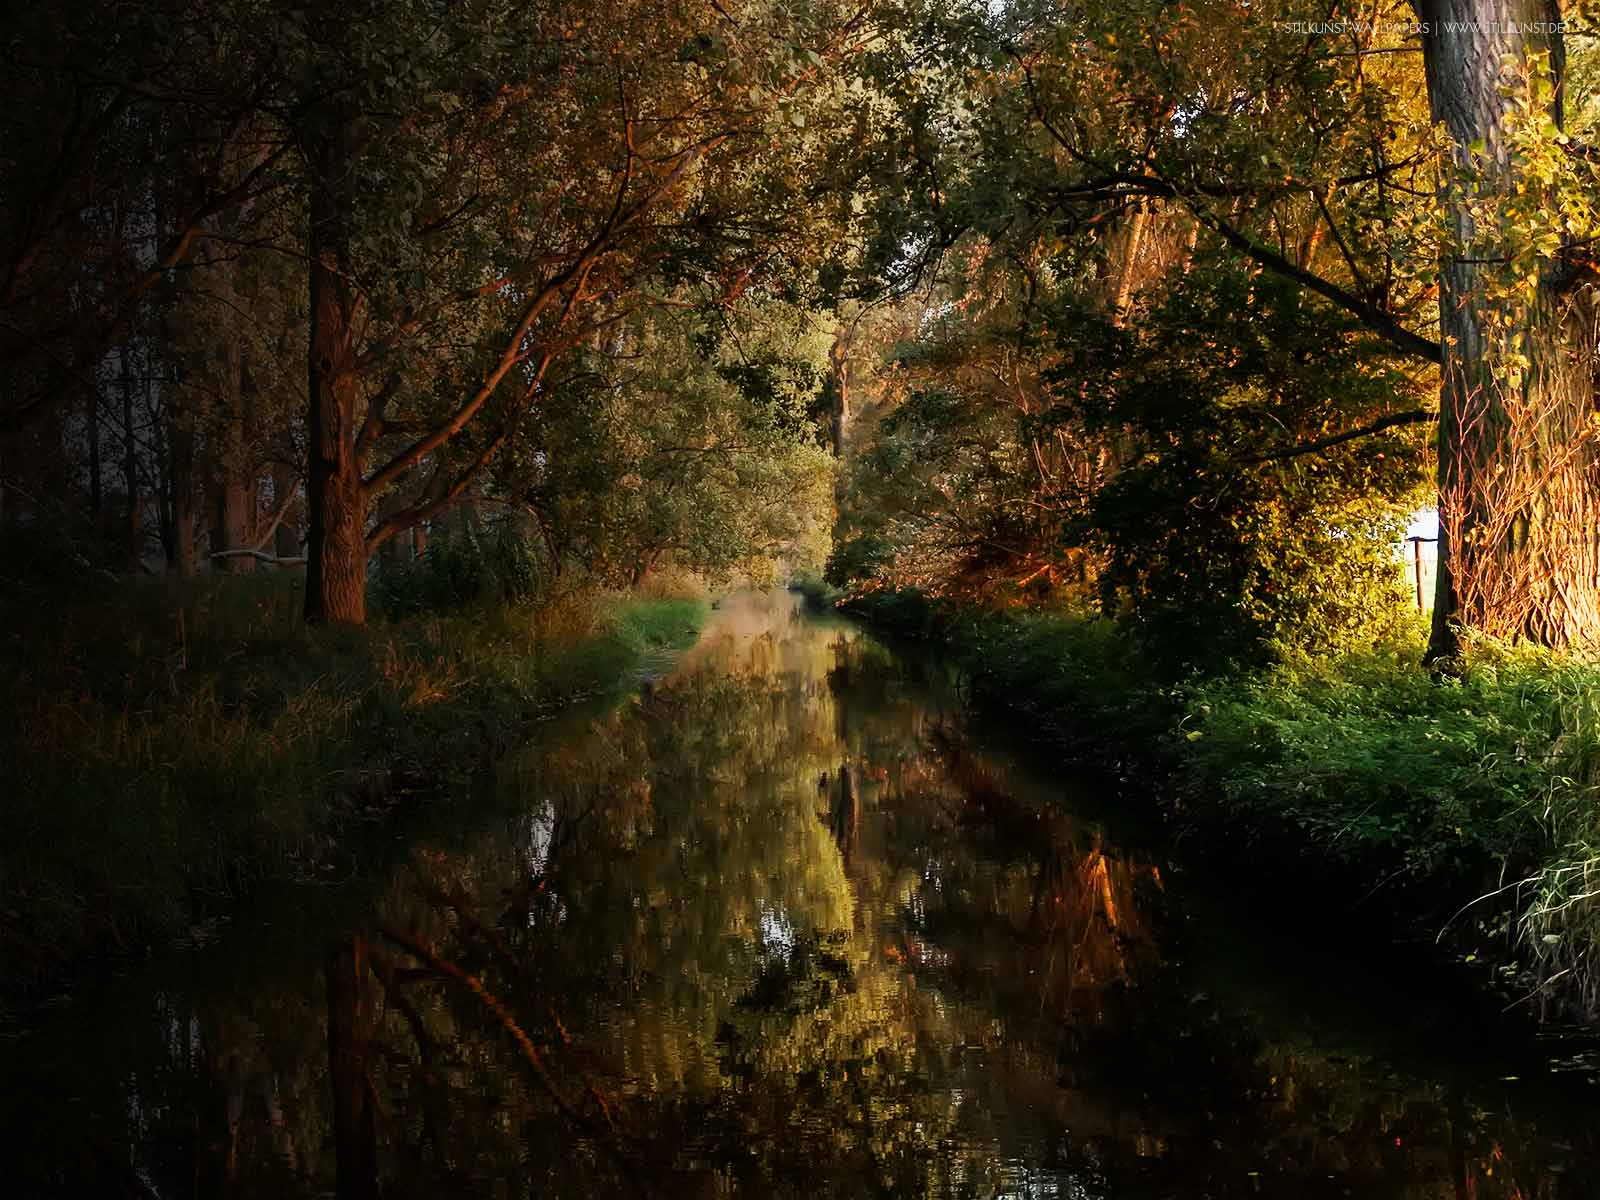 Farben im Herbst | 1600 x 1200px | Bild: ©by Sabrina | Reiner | www.stilkunst.de | Lizenz: CC BY-SA